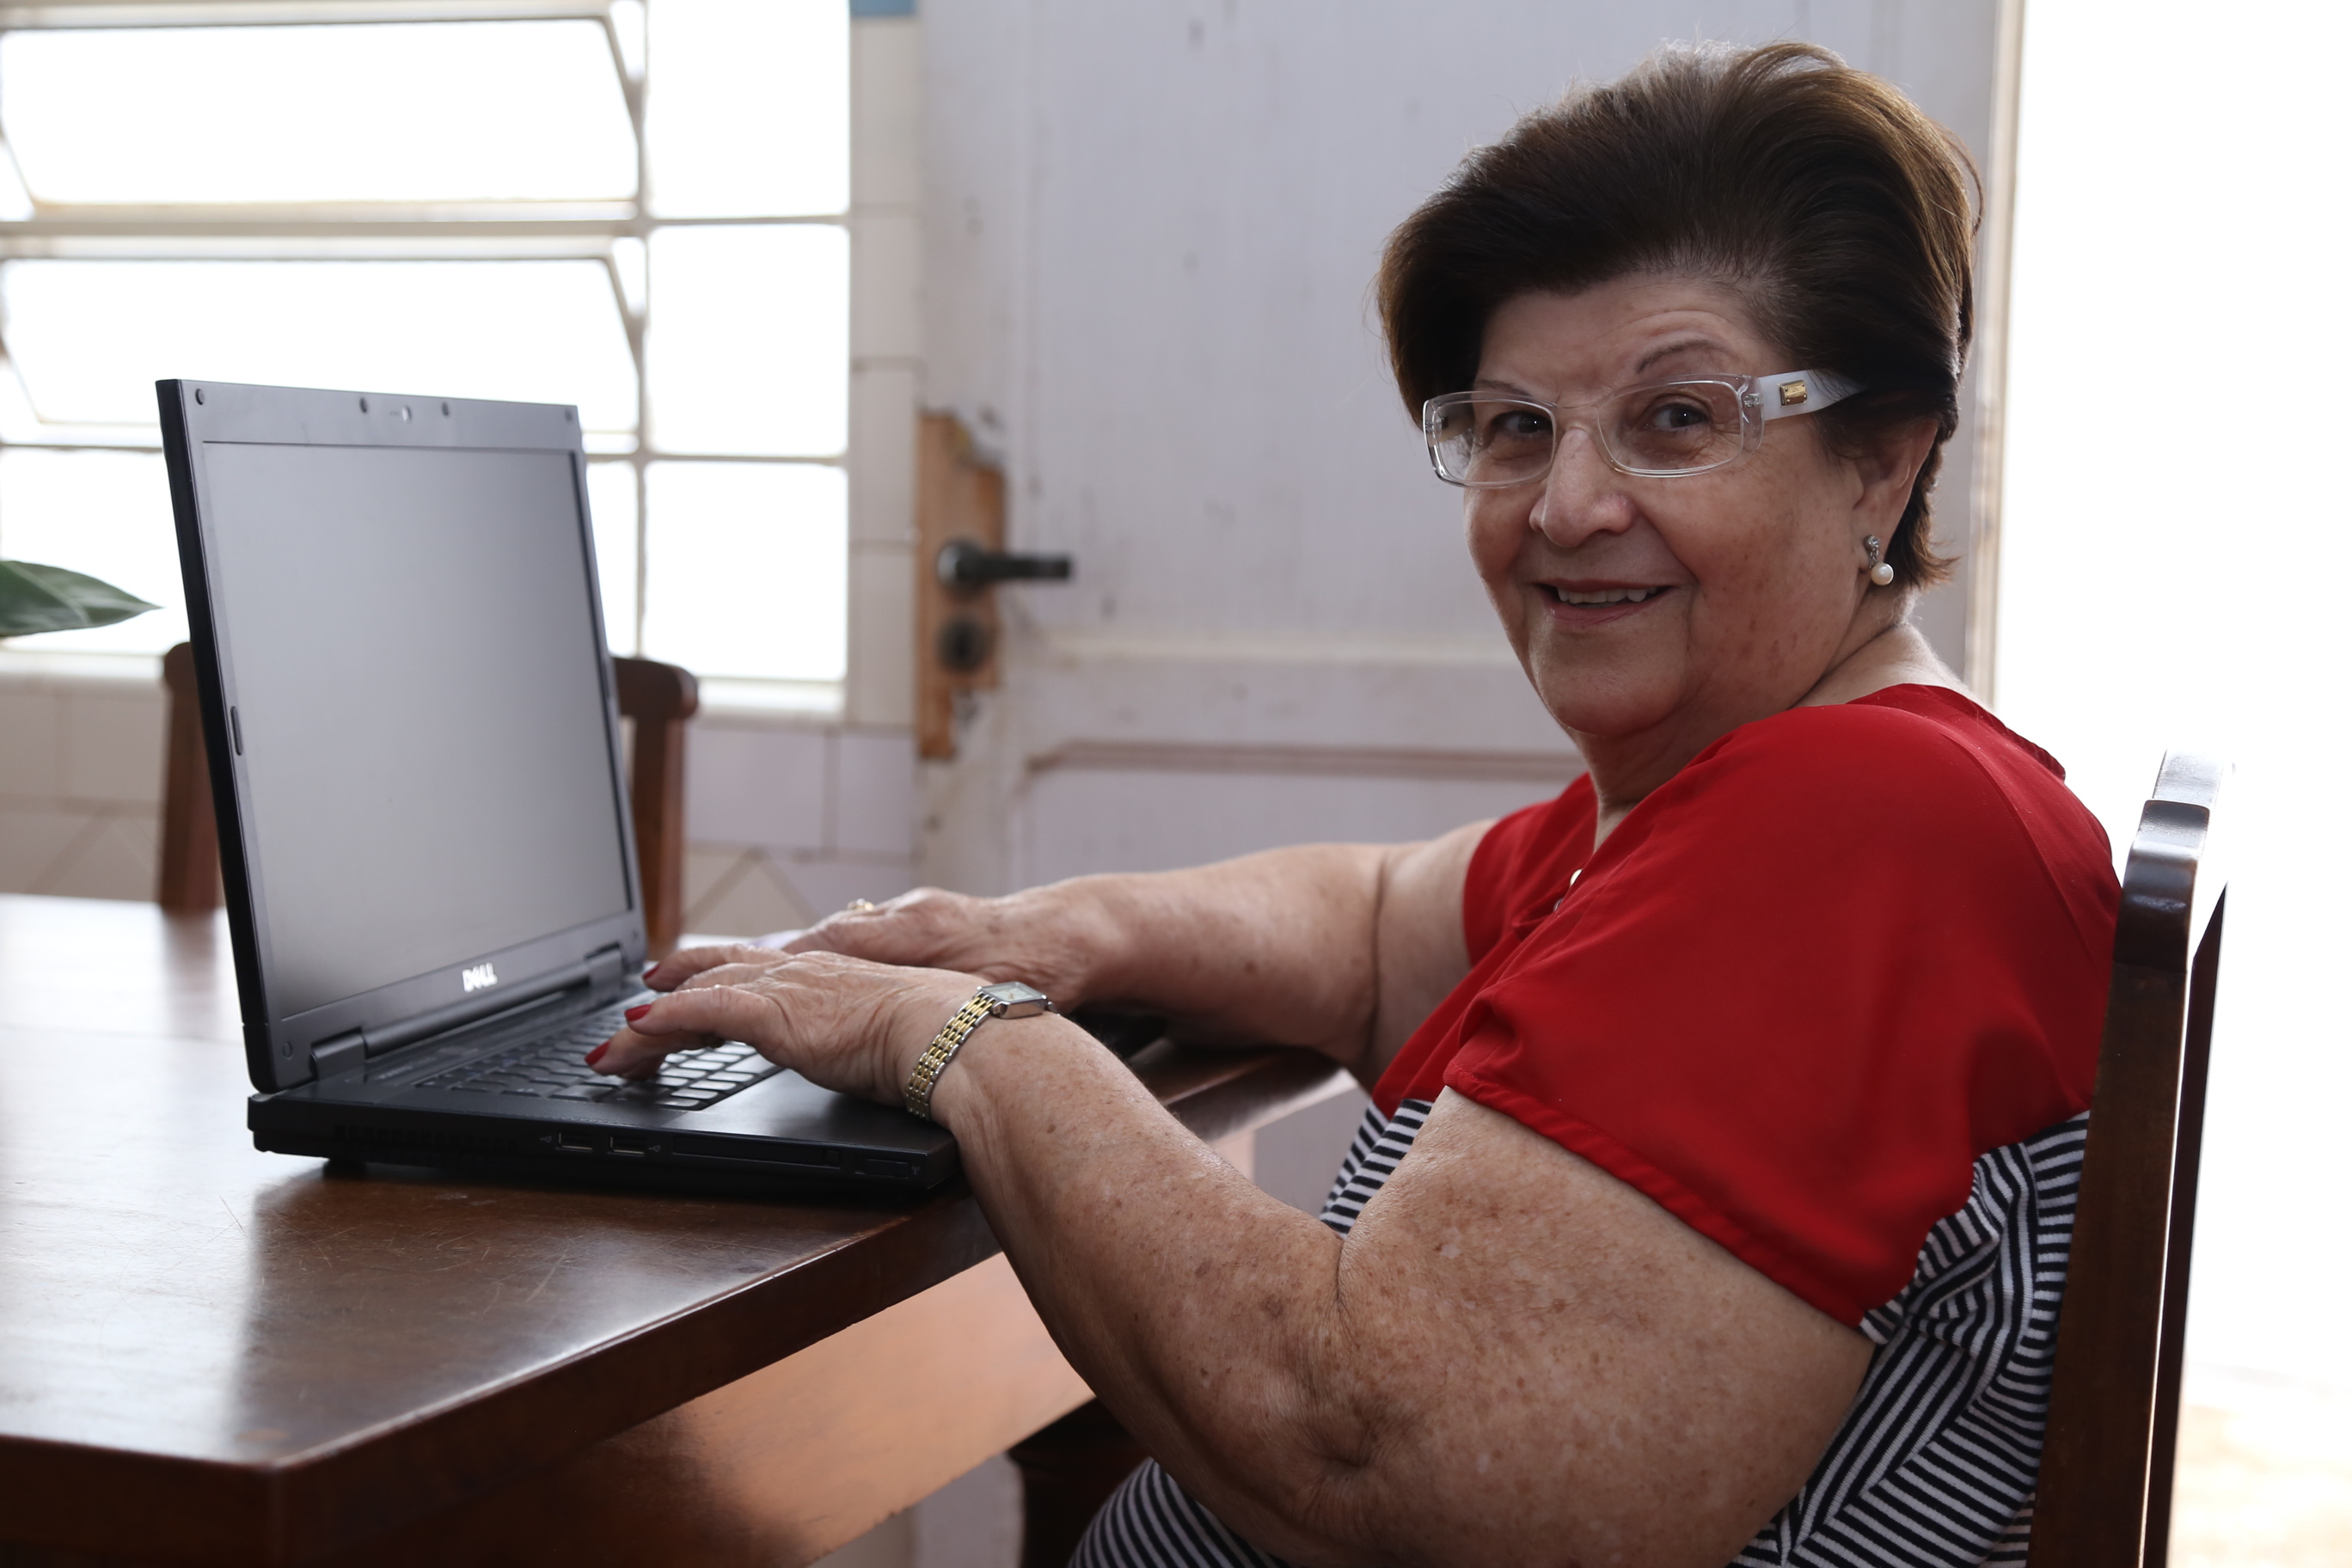  Aos 71 anos, Anna Luiza diz que gosta da internet e sente-se à vontade com o computador  (Foto: Ricardo Fernandes)